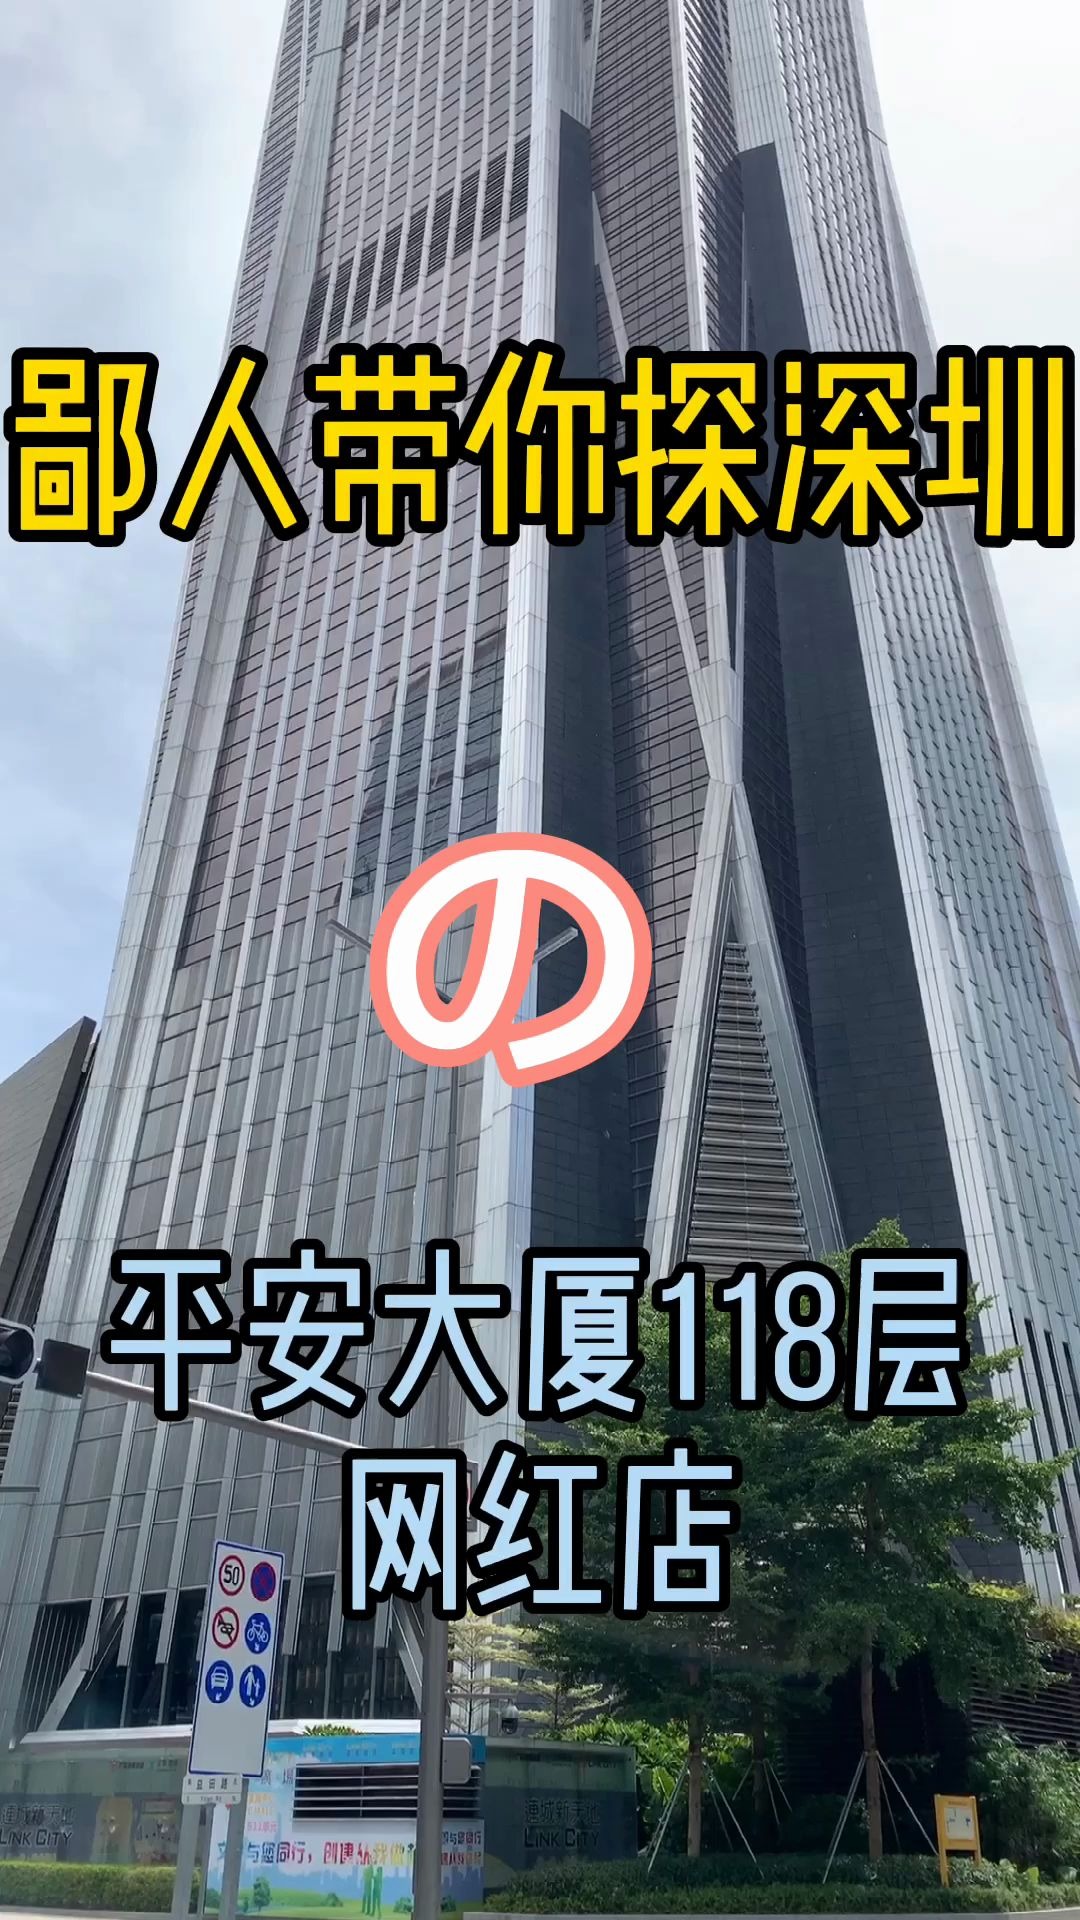 鄙人带你探深圳之平安大厦118层网红店